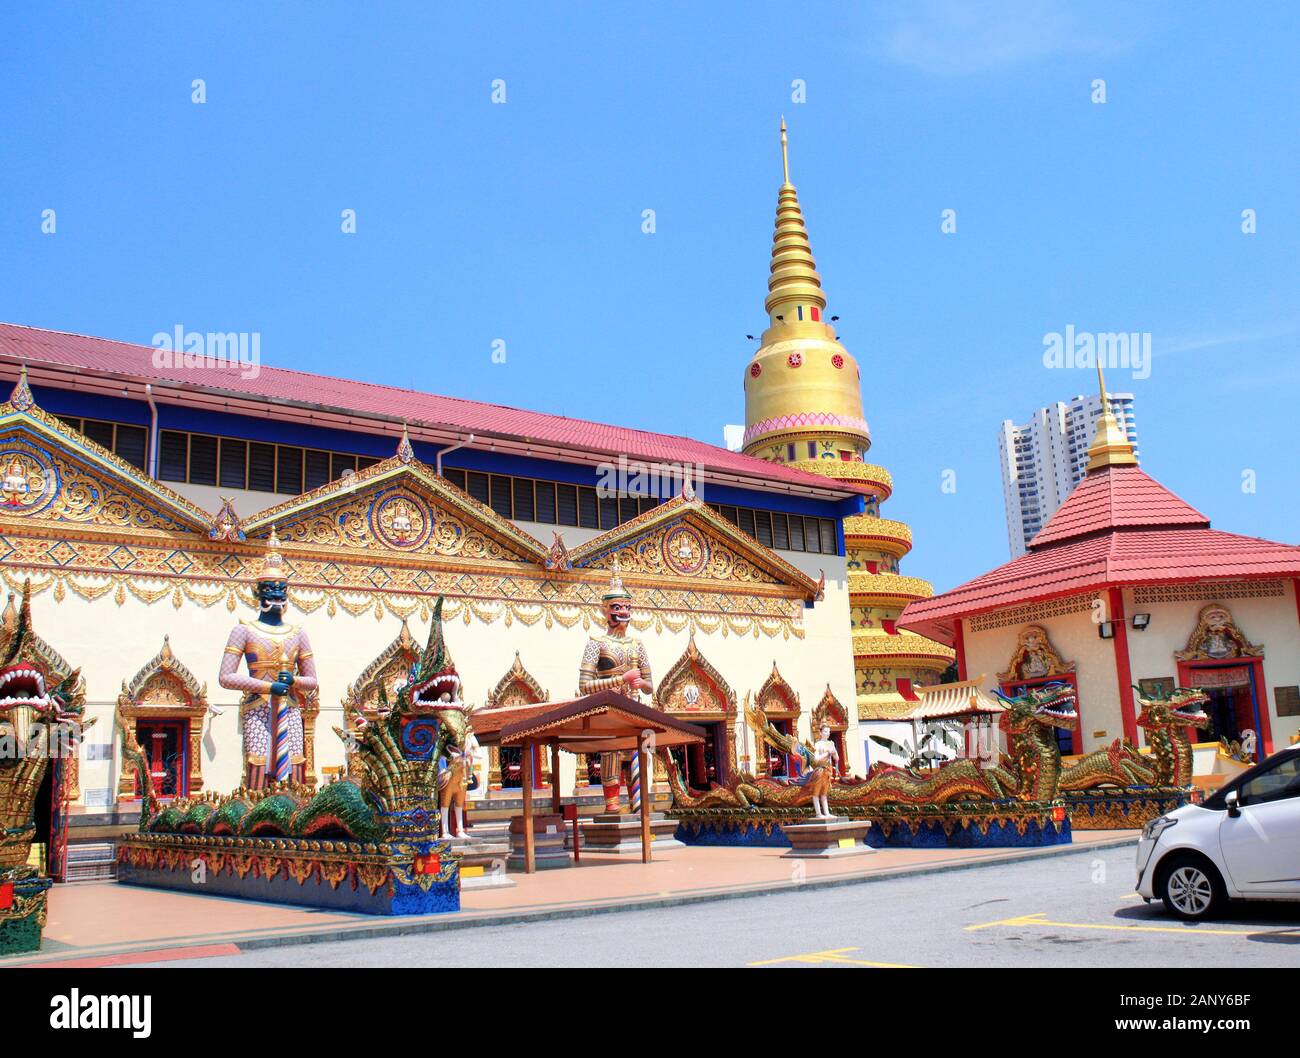 Des statues de dragons et serpents, kinnaris-nagas dans pavillon, Pulau Tikus Wat Chayamangkalaram temple bouddhiste thaï, célèbre attraction touristique de Georget Banque D'Images